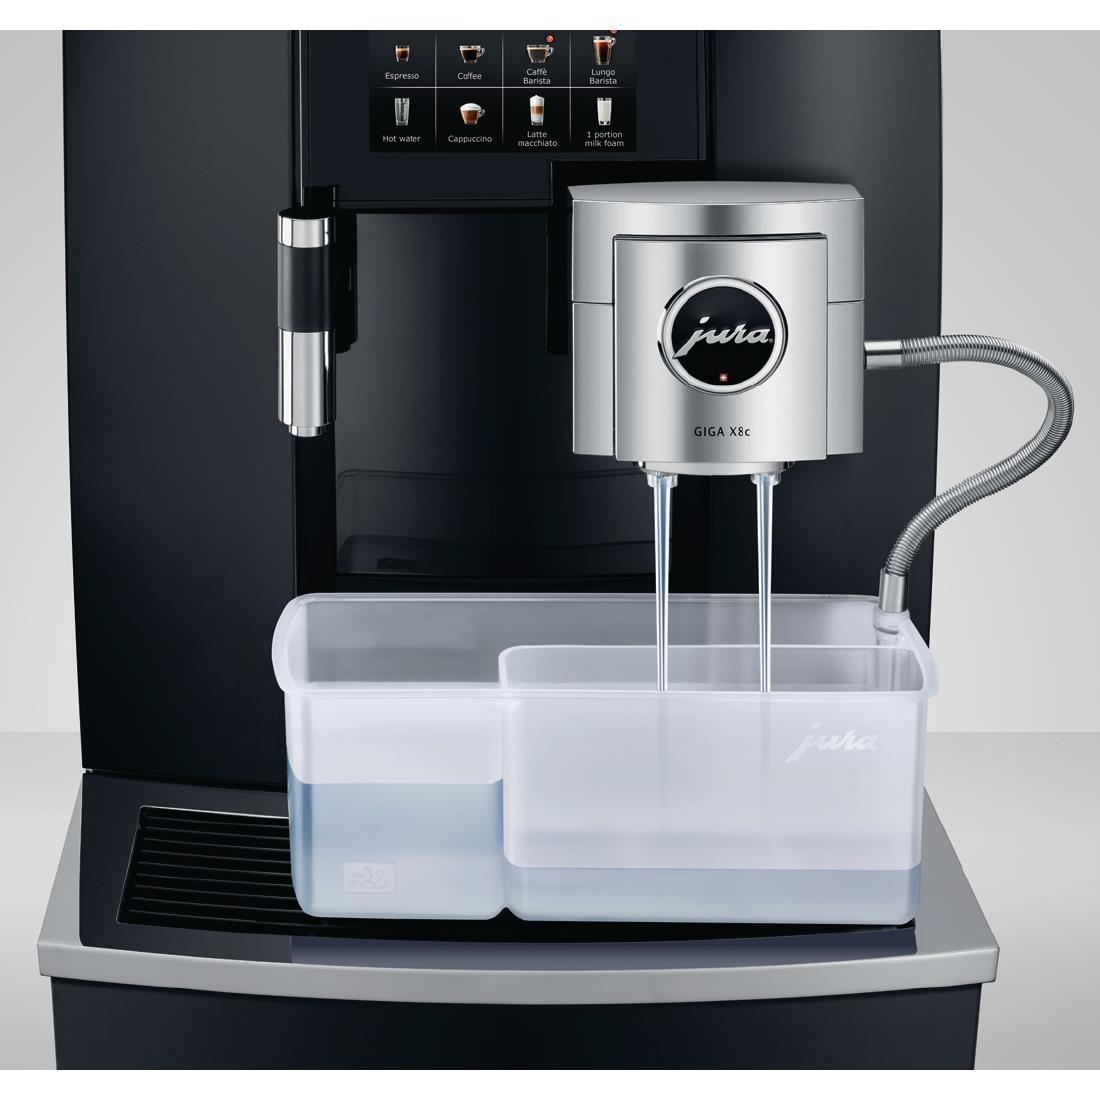 Jura Giga X8c Mains Fill Bean to Cup Coffee Machine Black - FB456  - 5